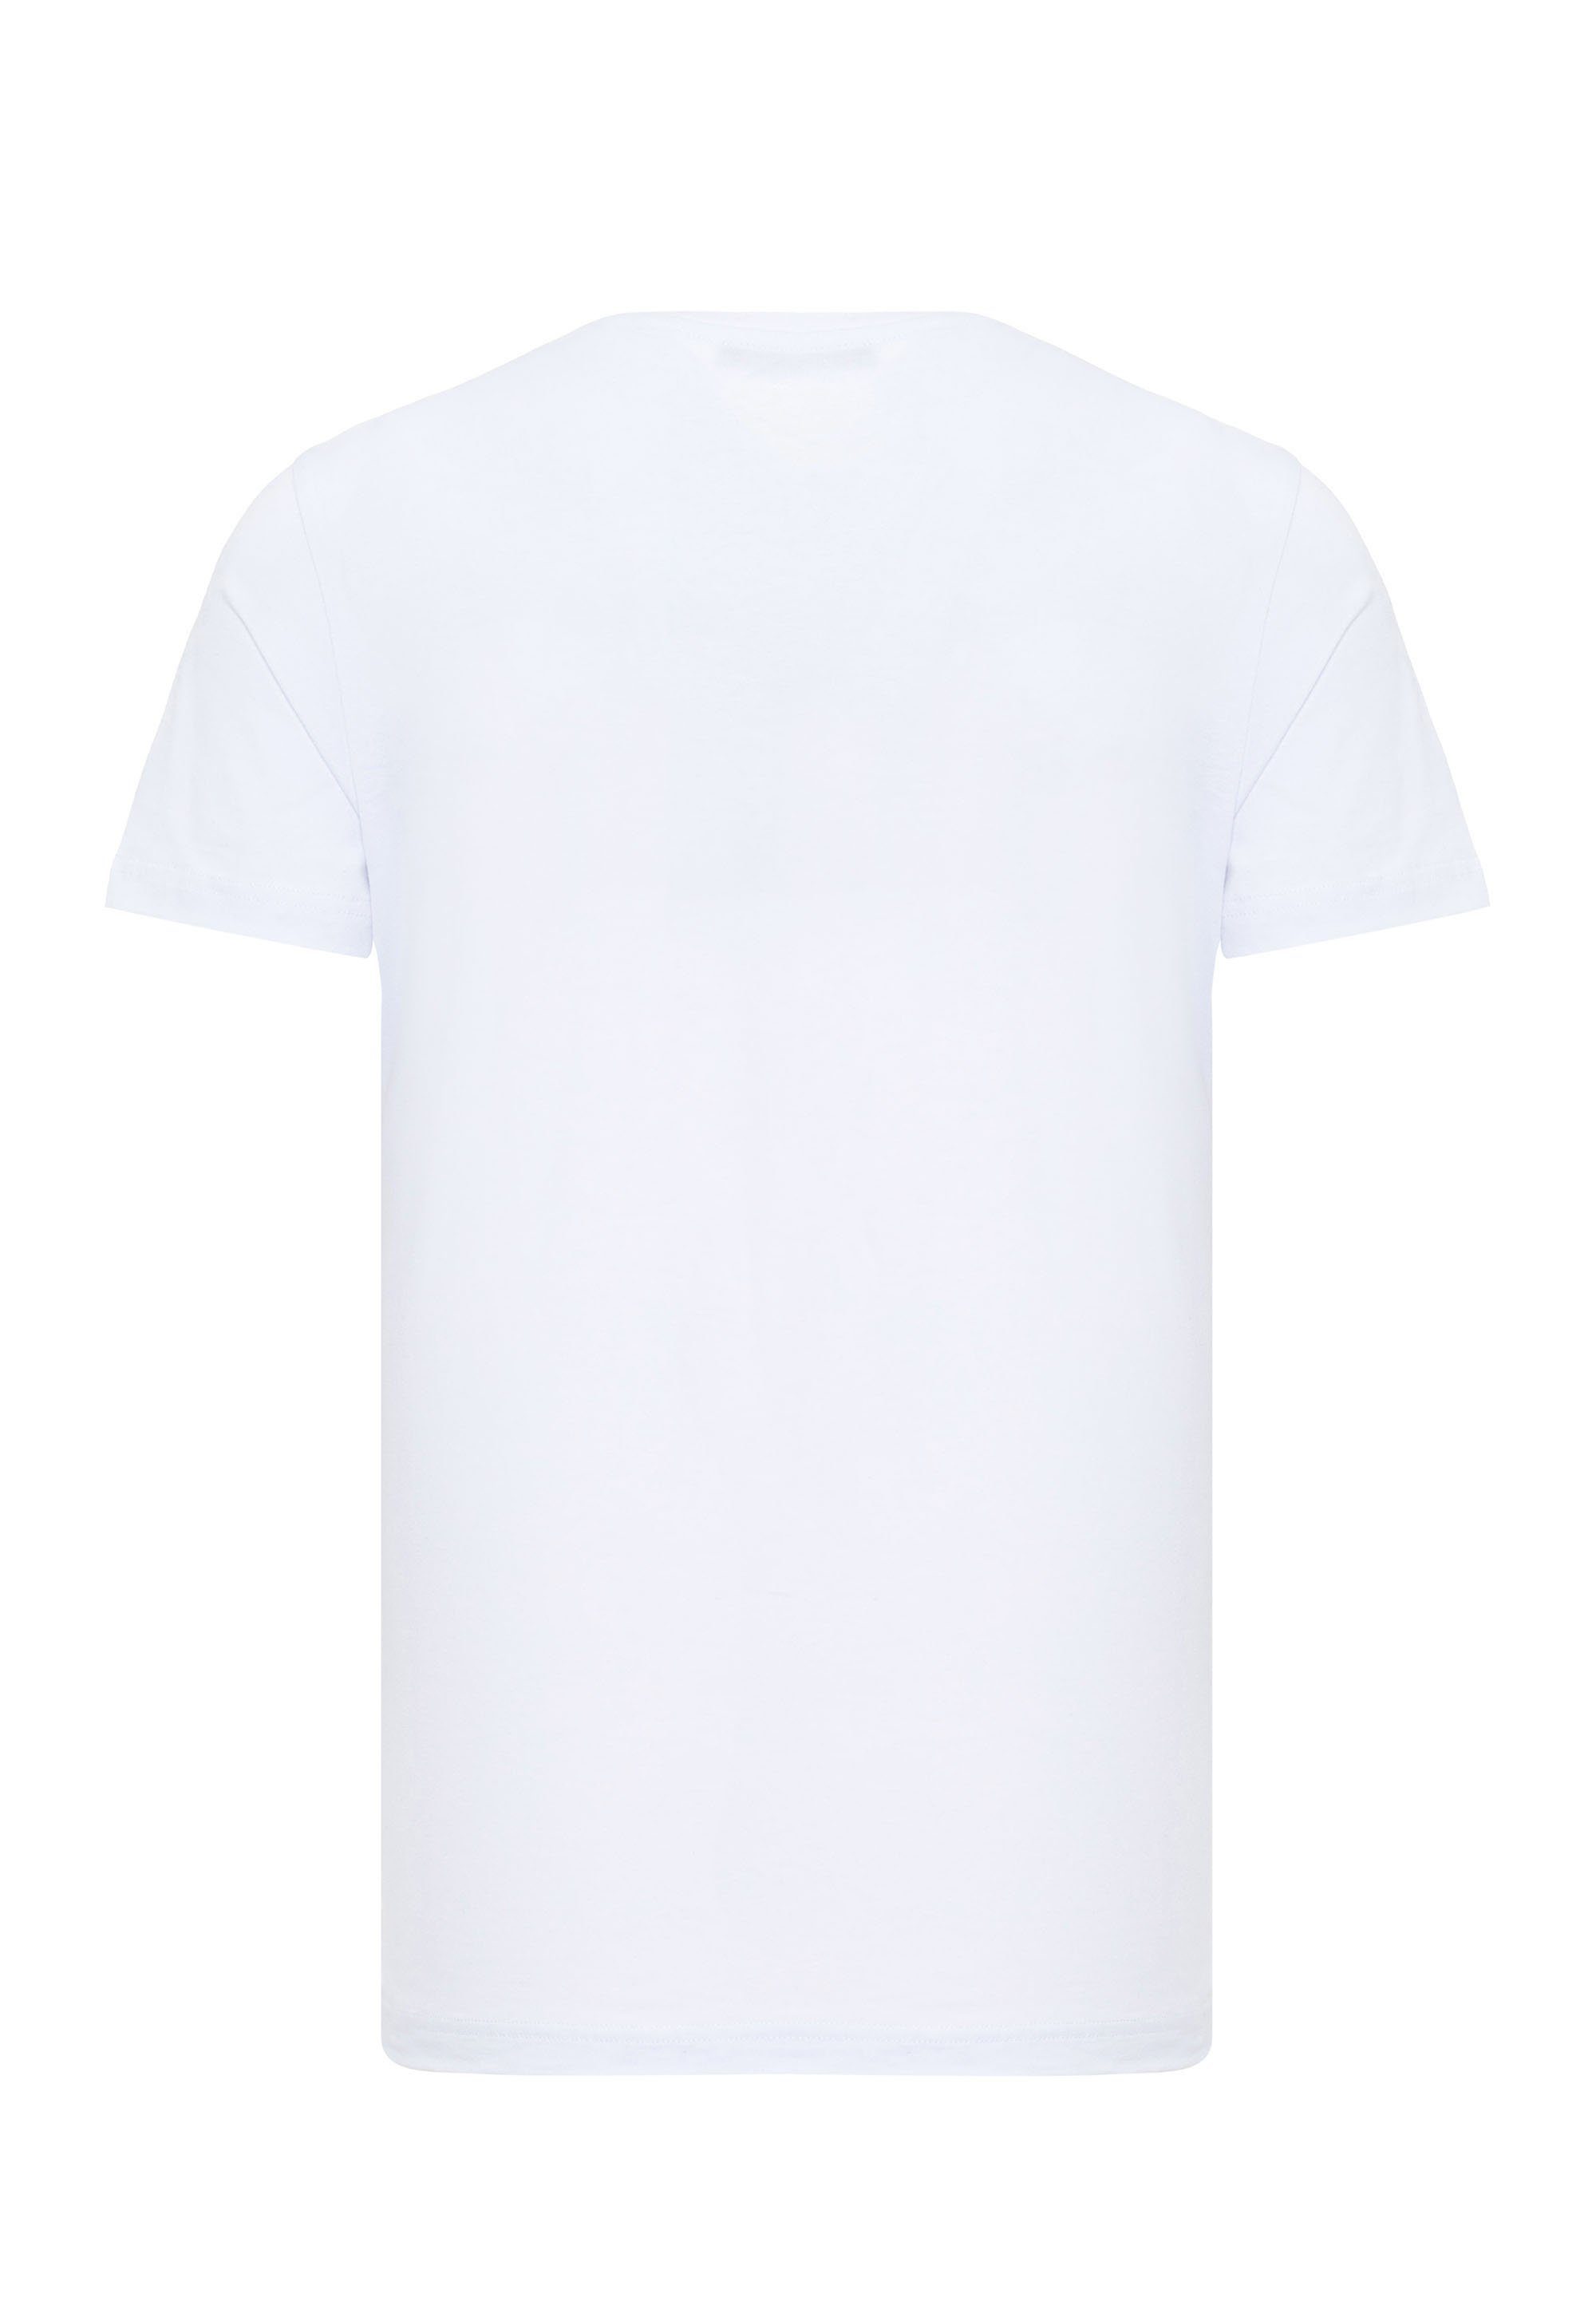 Print & coolem weiß Baxx Cipo mit T-Shirt